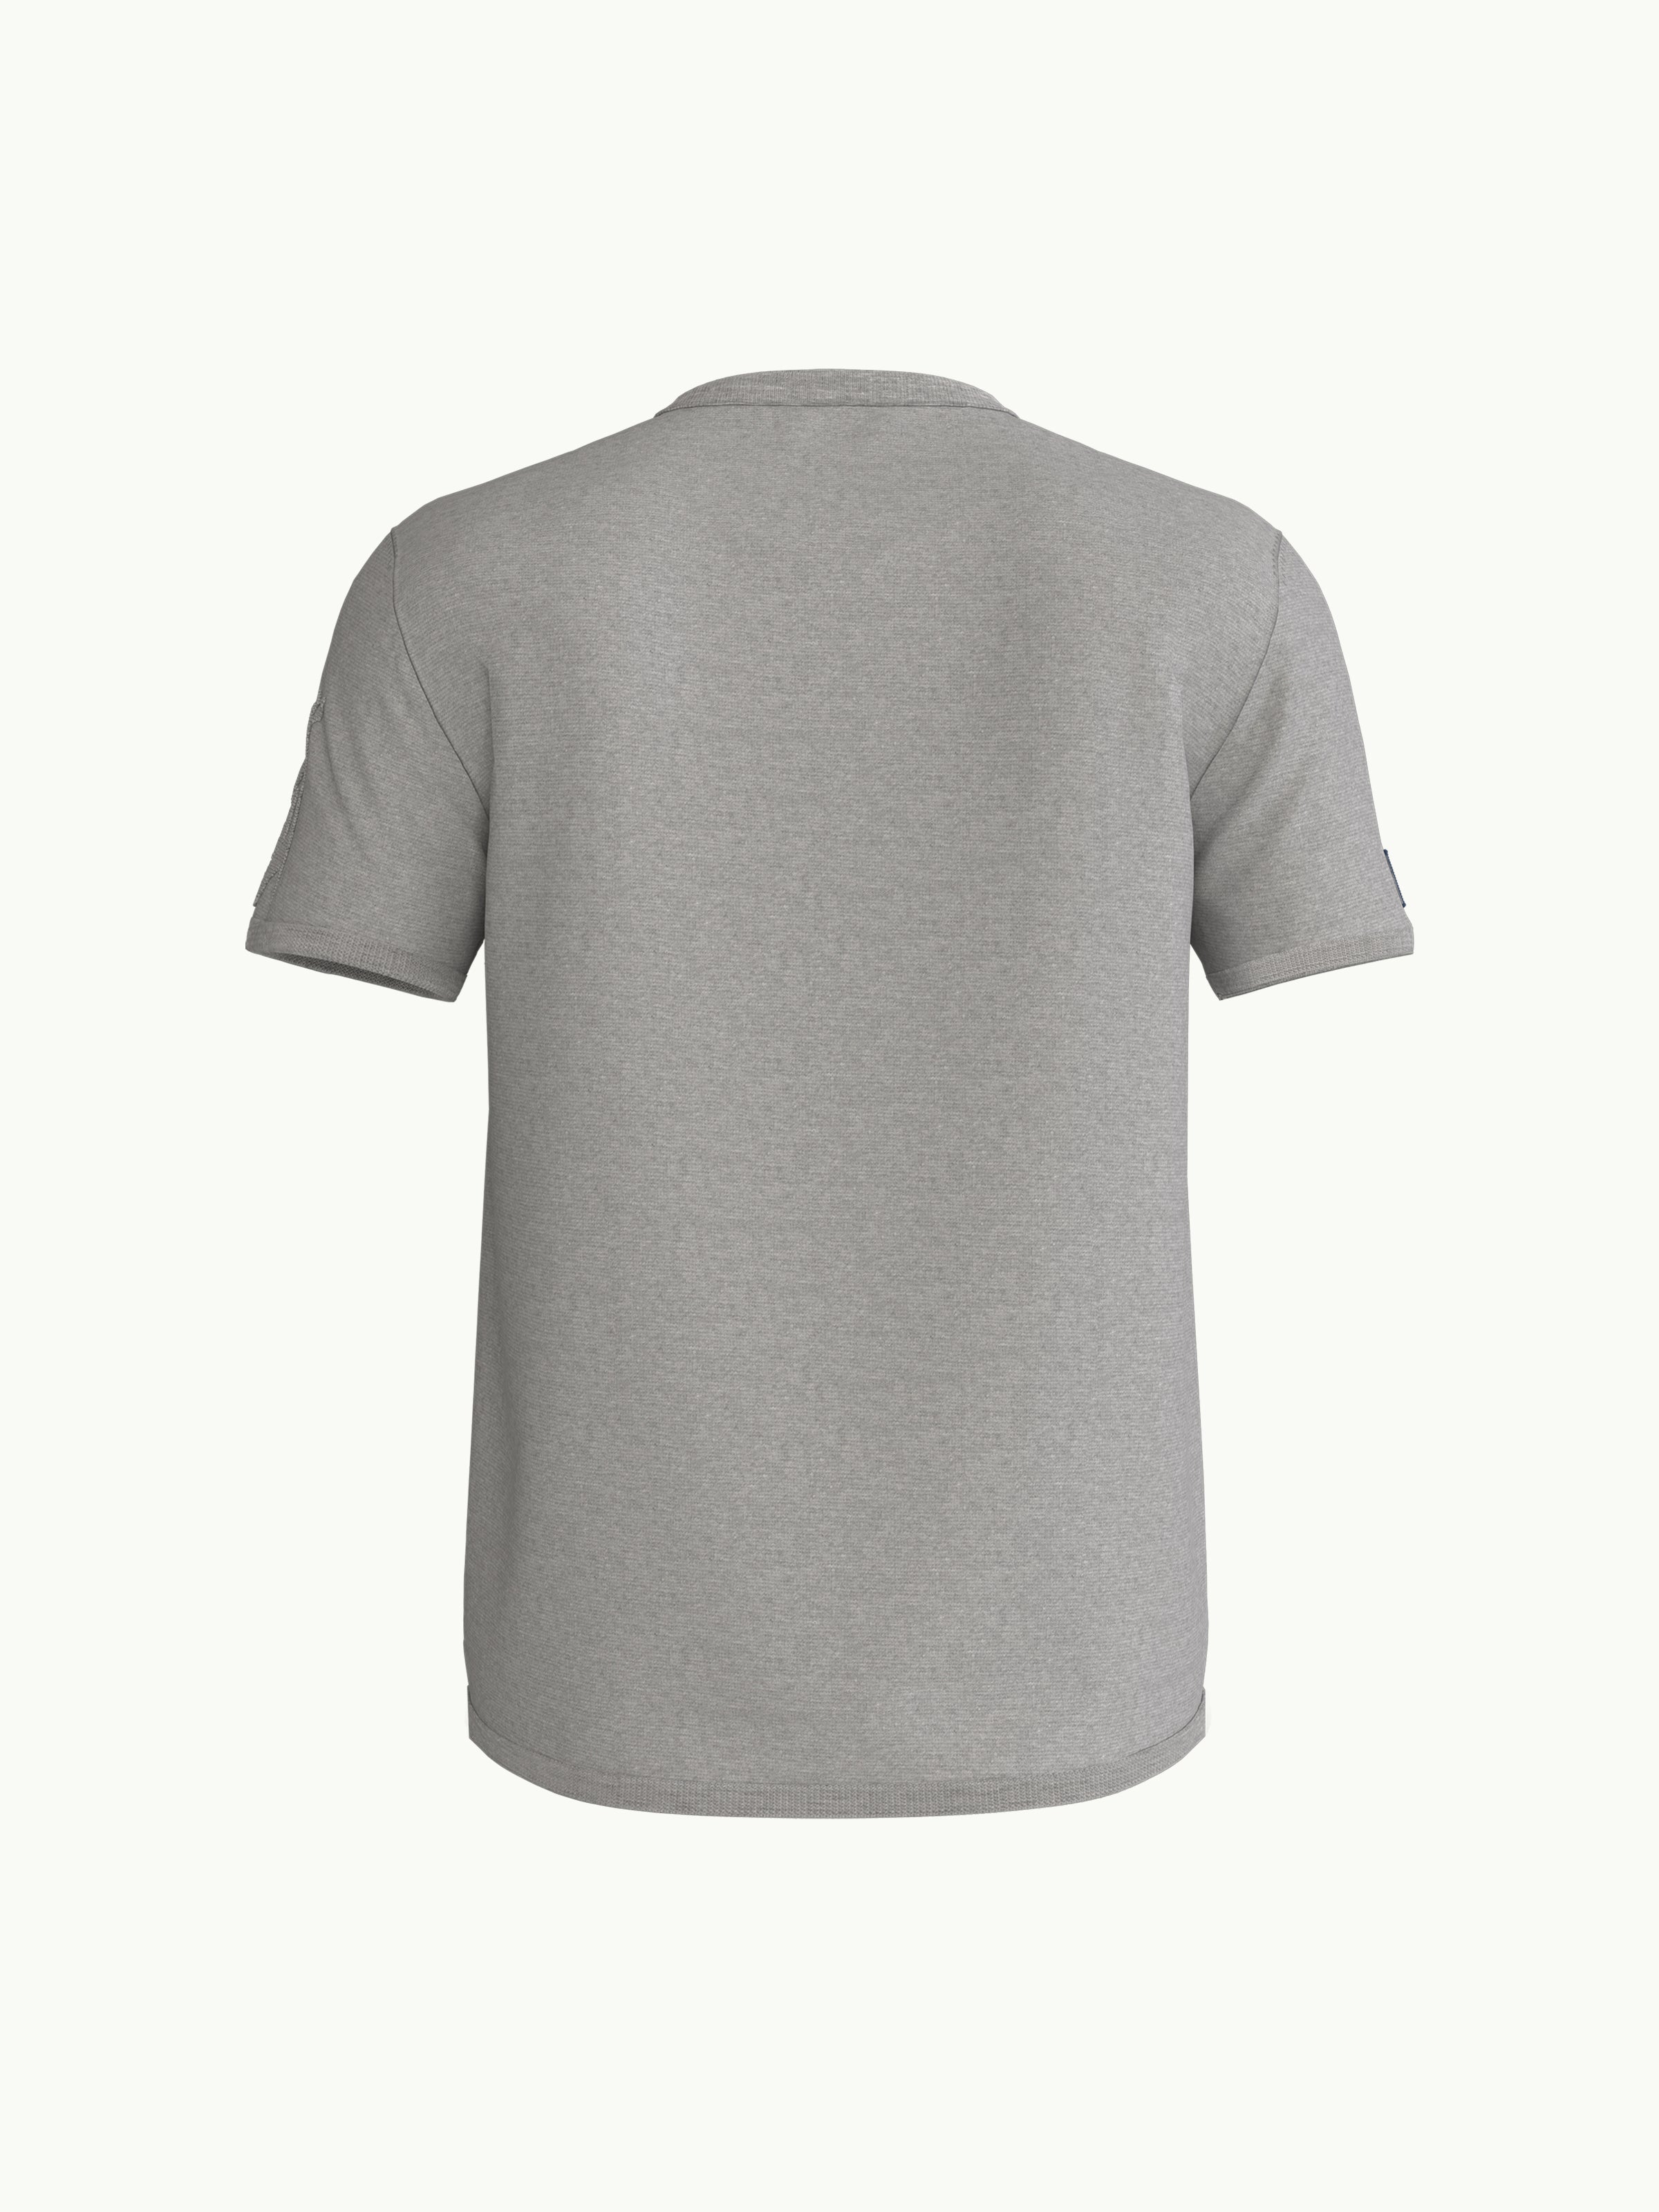 Women's T-Shirt - Parrot Light Grey